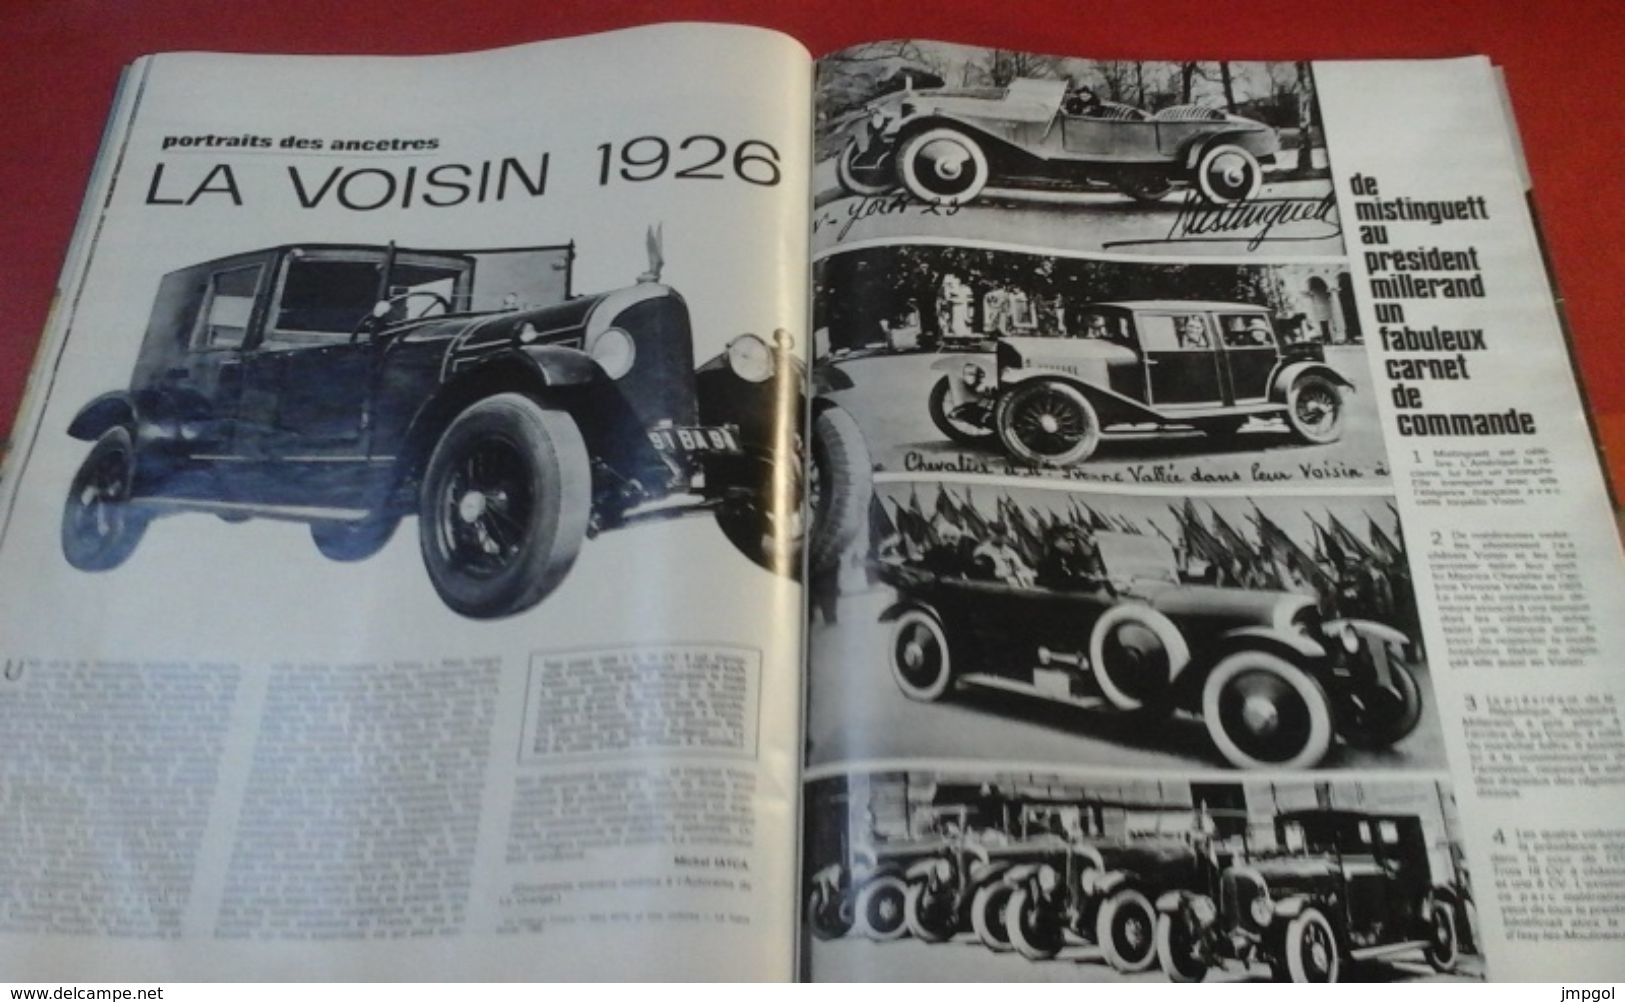 L'Auto Journal n°15 6 Août 1970 Nouvelle Simca Chrysler, Essai Simca 1100 S, Ligier, Voisin 1926, Jochen Rindt